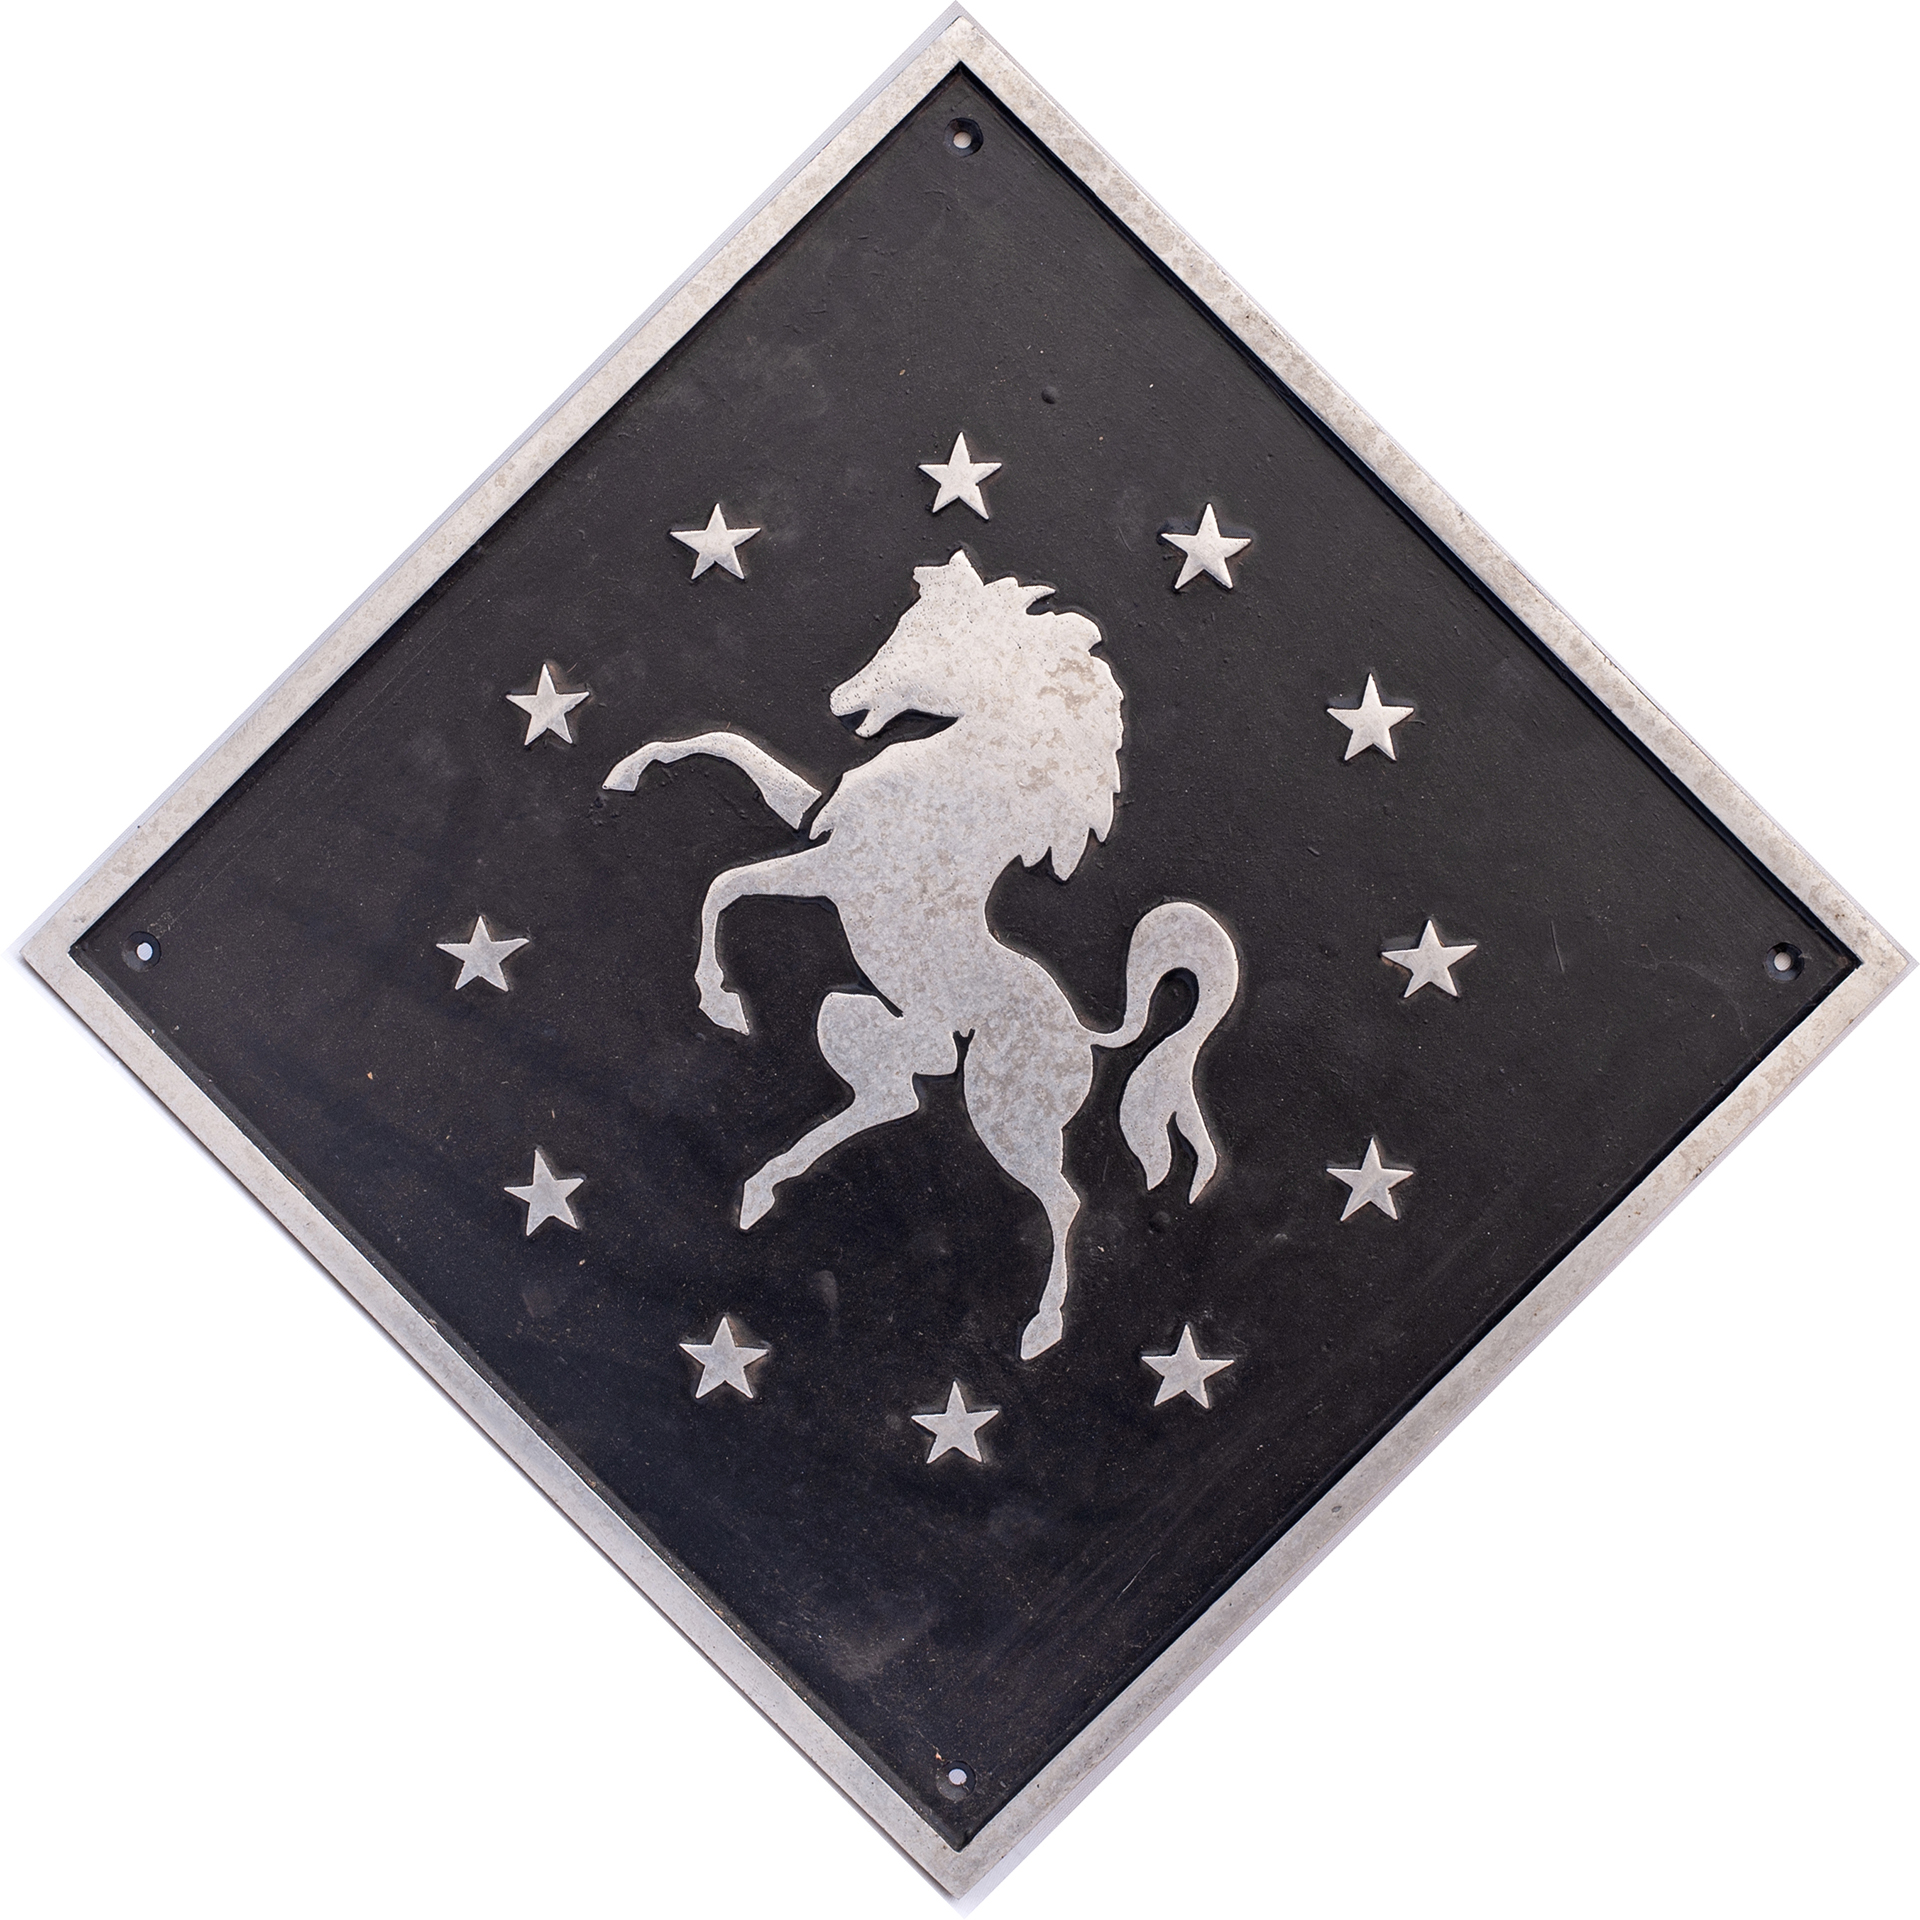 British Rail cast aluminium depot plaque for Dollands Moor depicting the Invicta Horse. Square